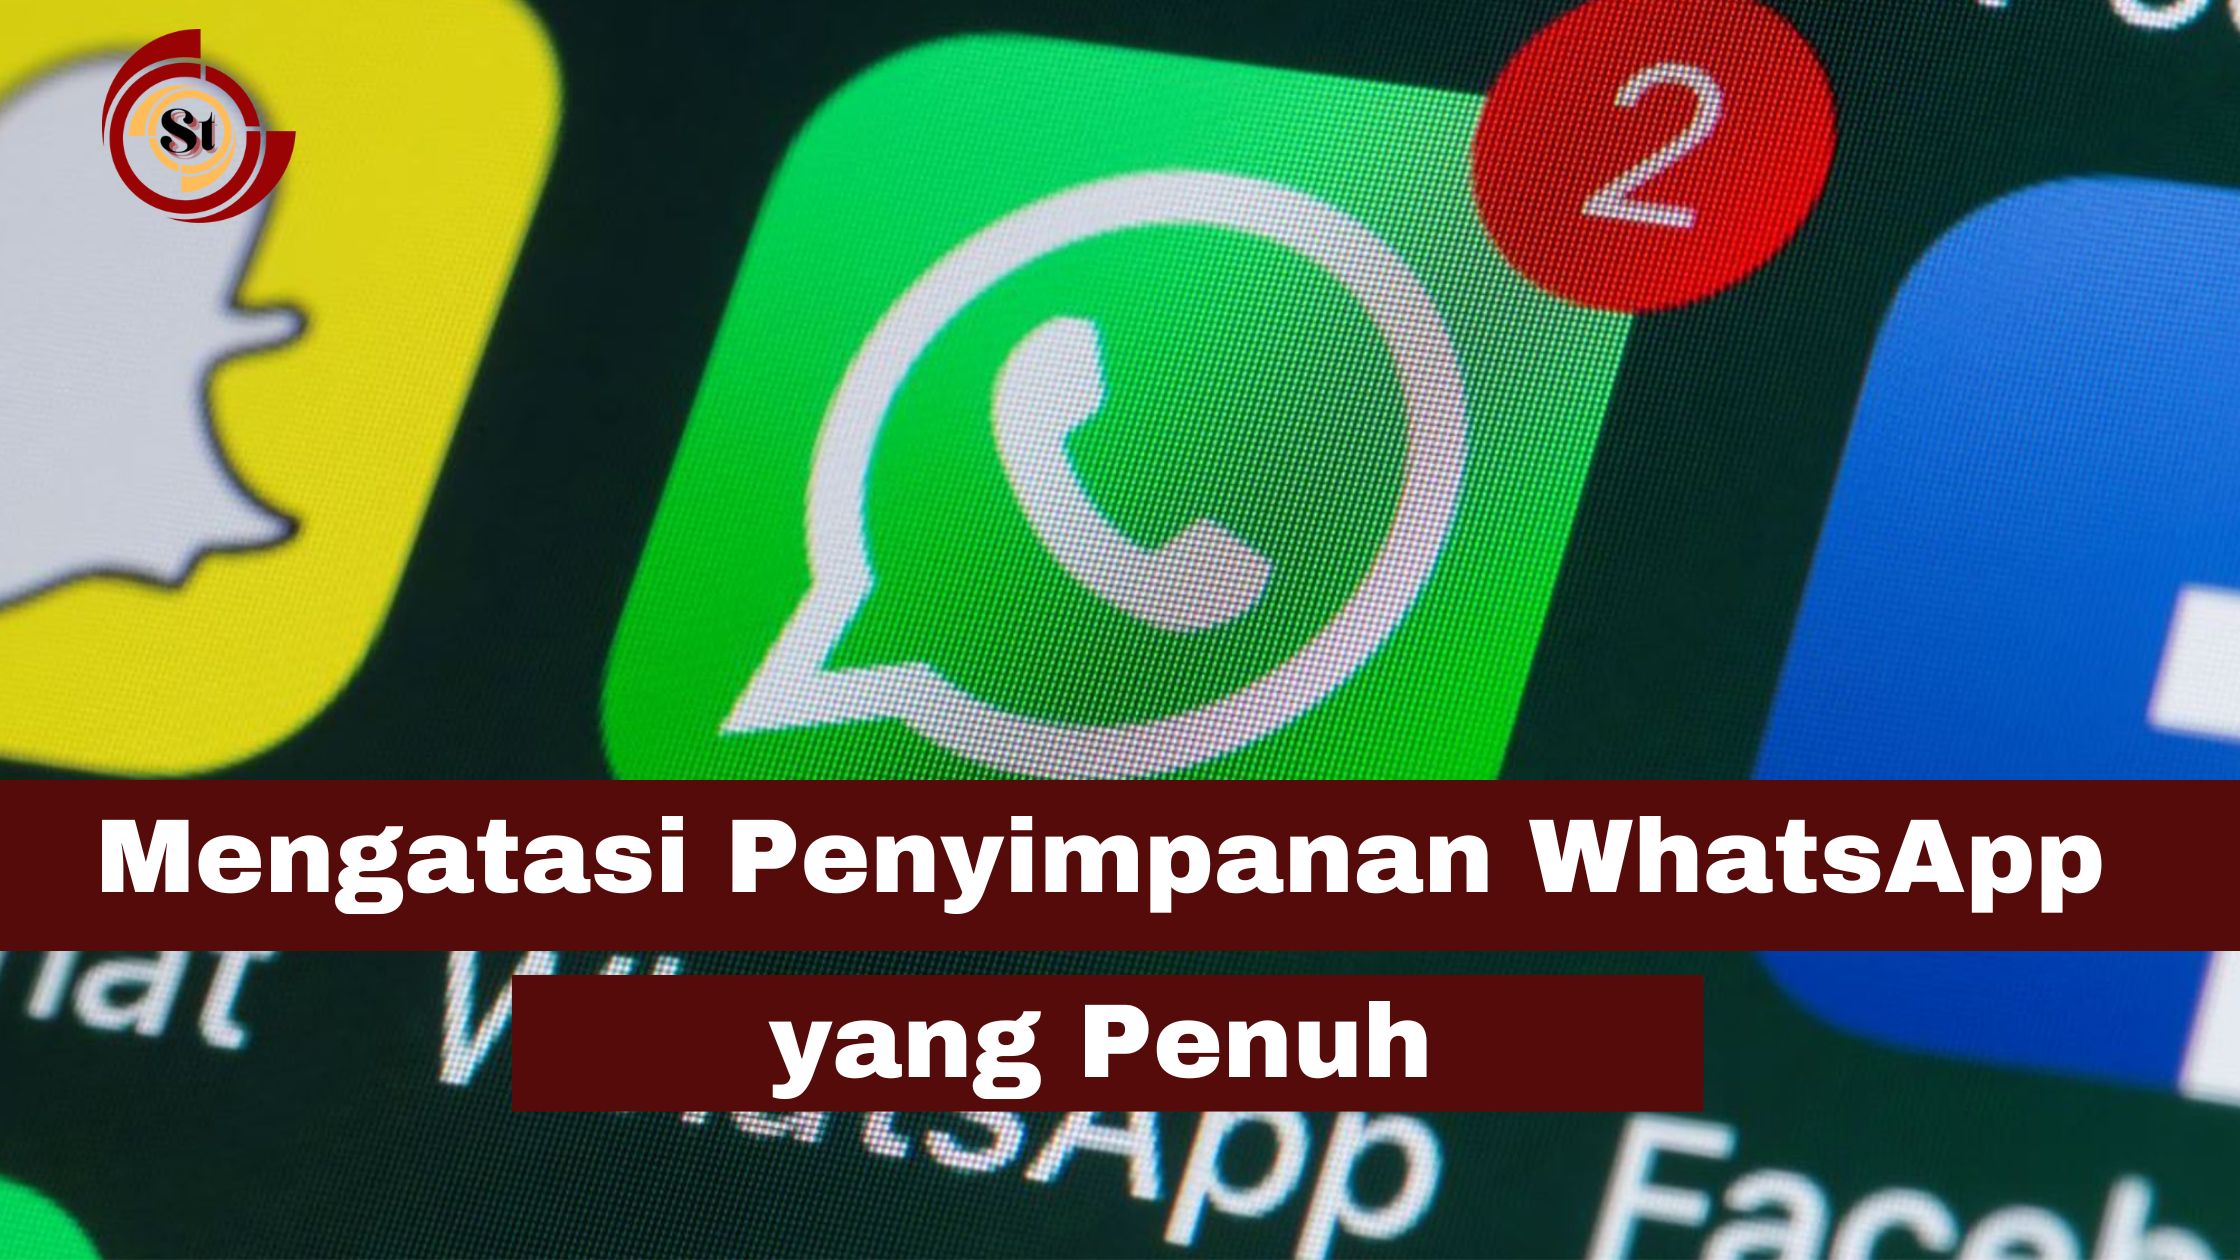 Mengatasi Penyimpanan WhatsApp yang Penuh